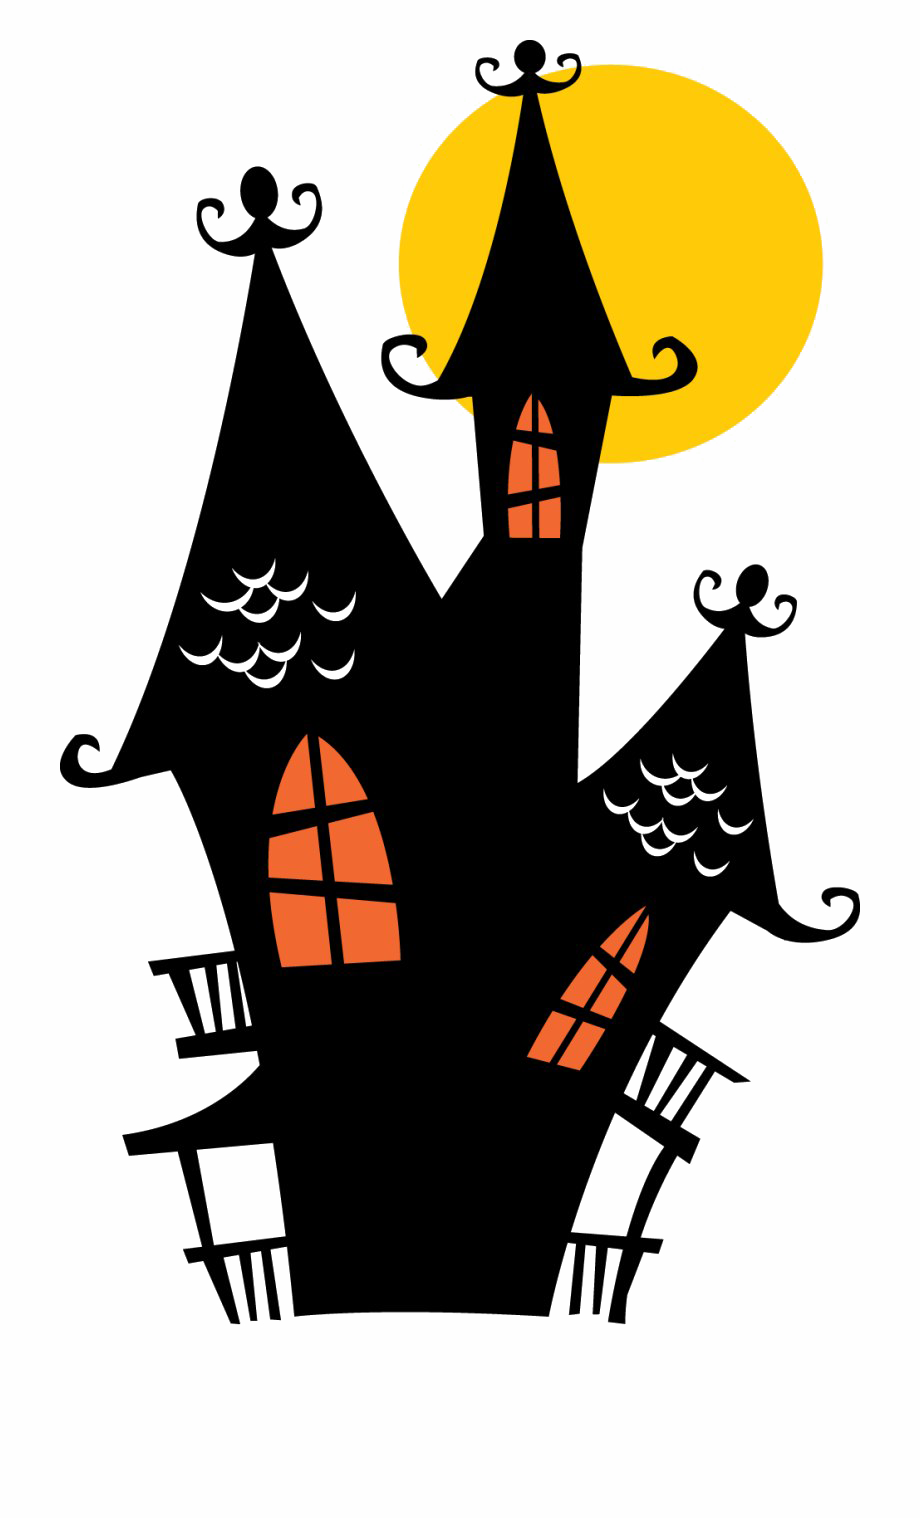 Immagine Trasparente della casa stregata di Halloween